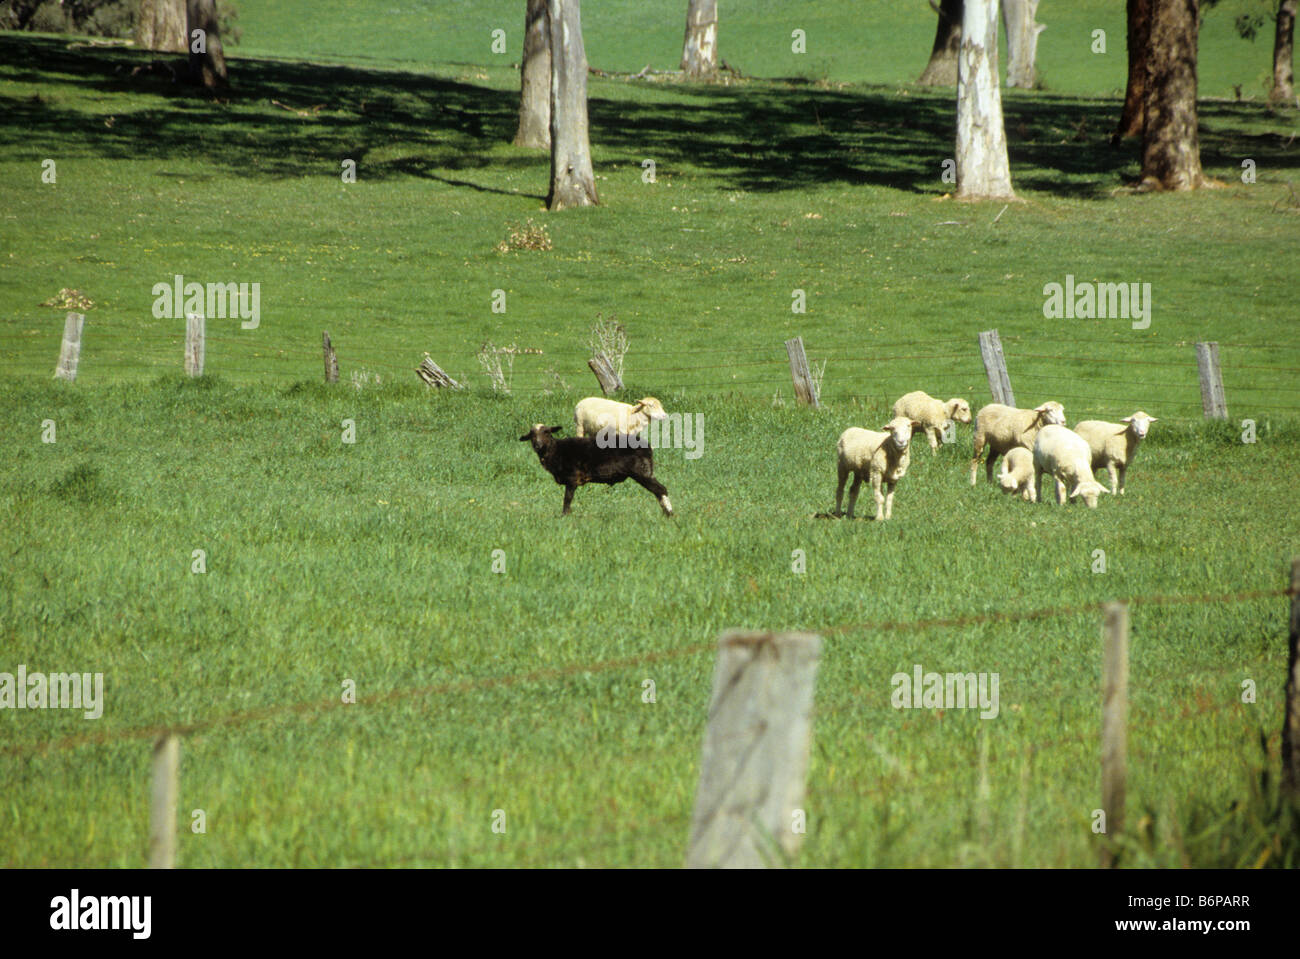 Mouton noir broute au milieu de moutons blancs en groupe, l'Australie Banque D'Images